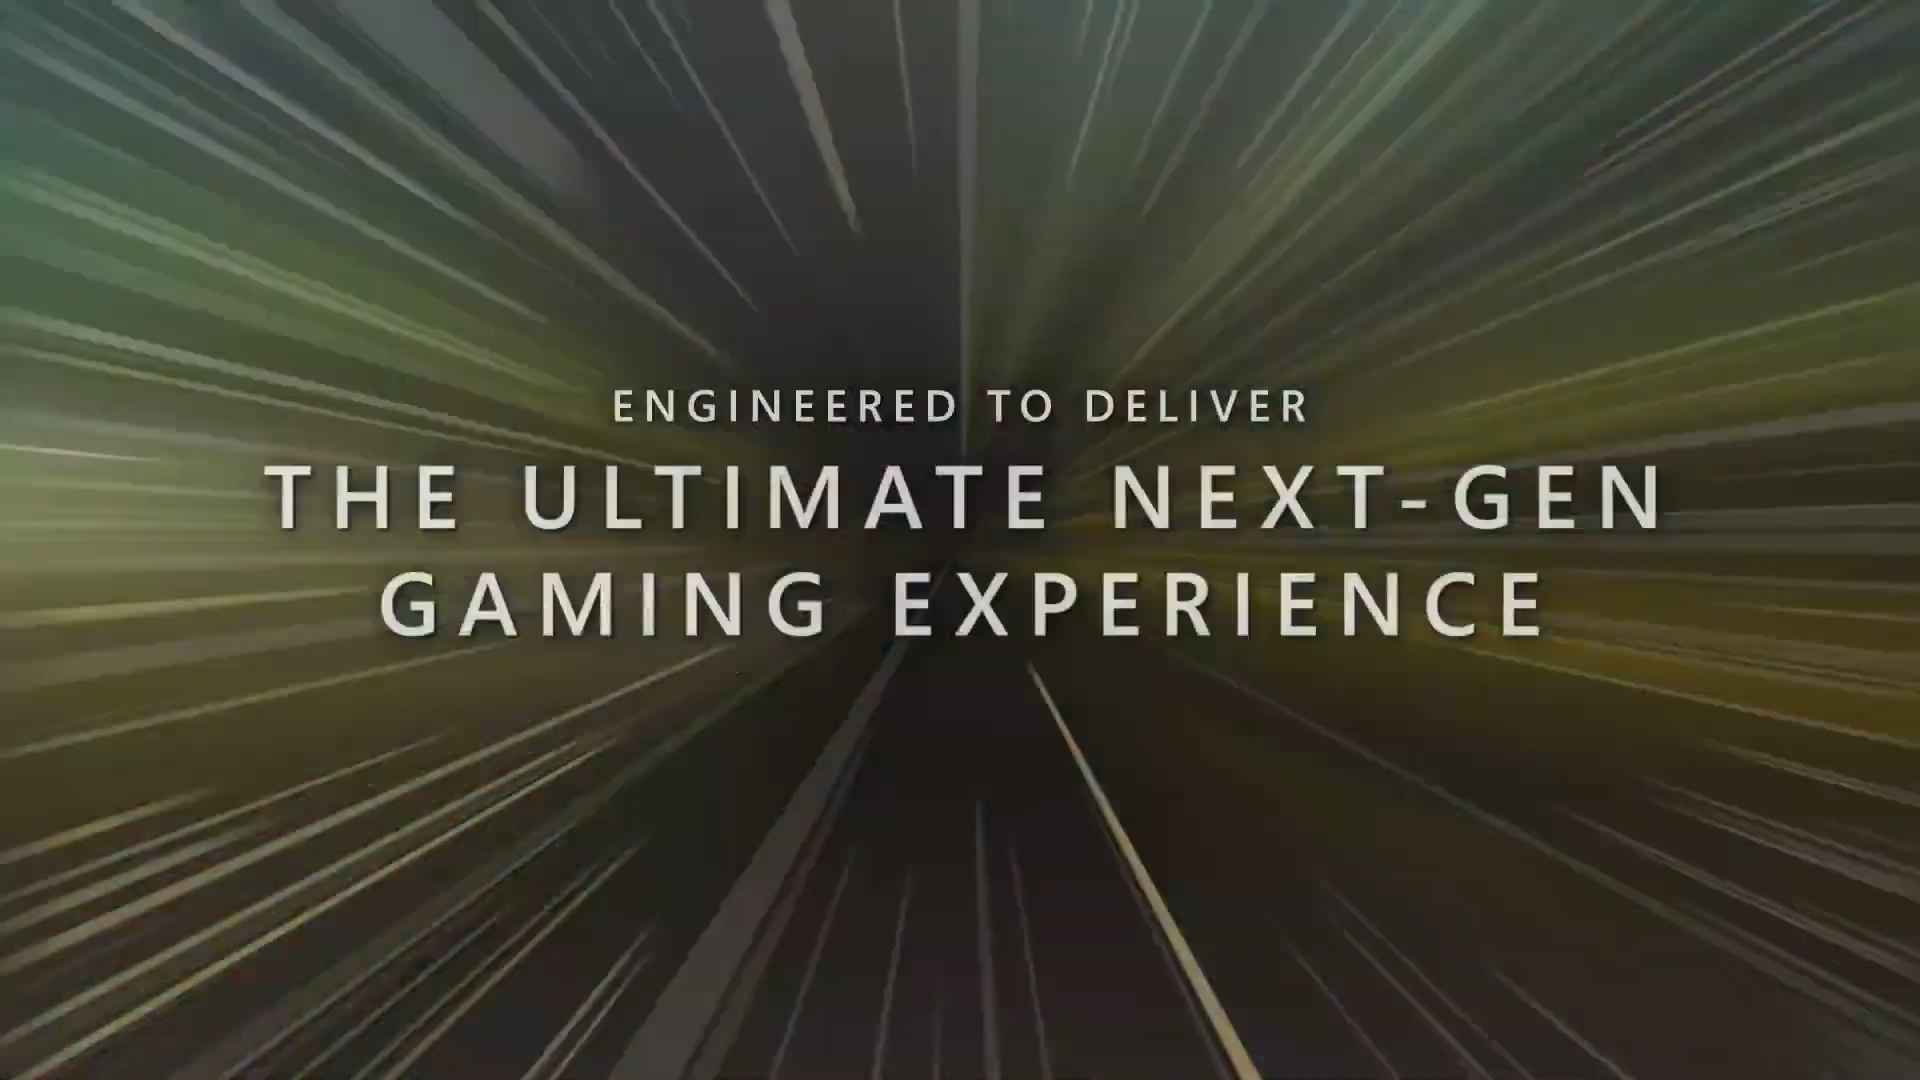 微软Xbox Velocity架构宣传视频：一切更快、更好 7%title%